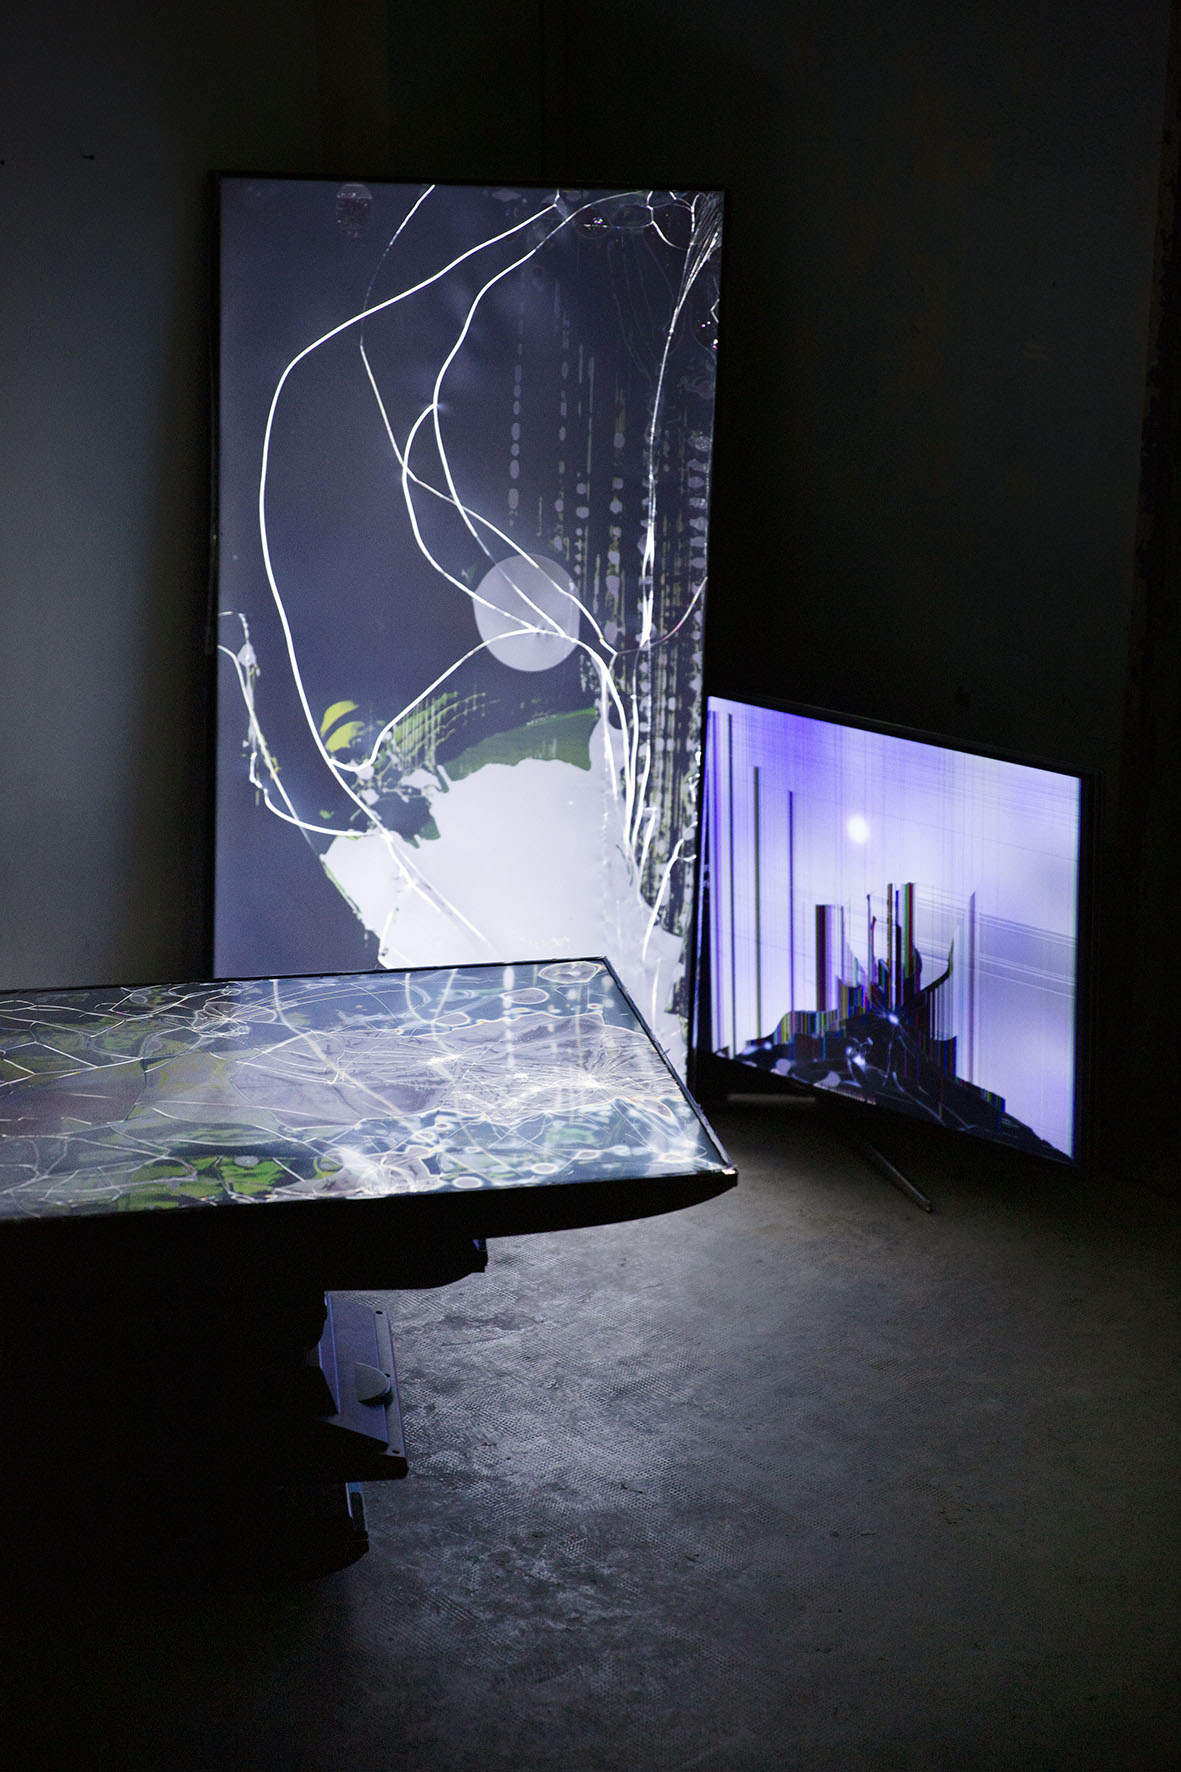 Plan rapproché d'une installation en volume : dans une pièce sombre, des écrans défectueux mis sous tension donnent à voir des traces d'impact et des effets picturaux.